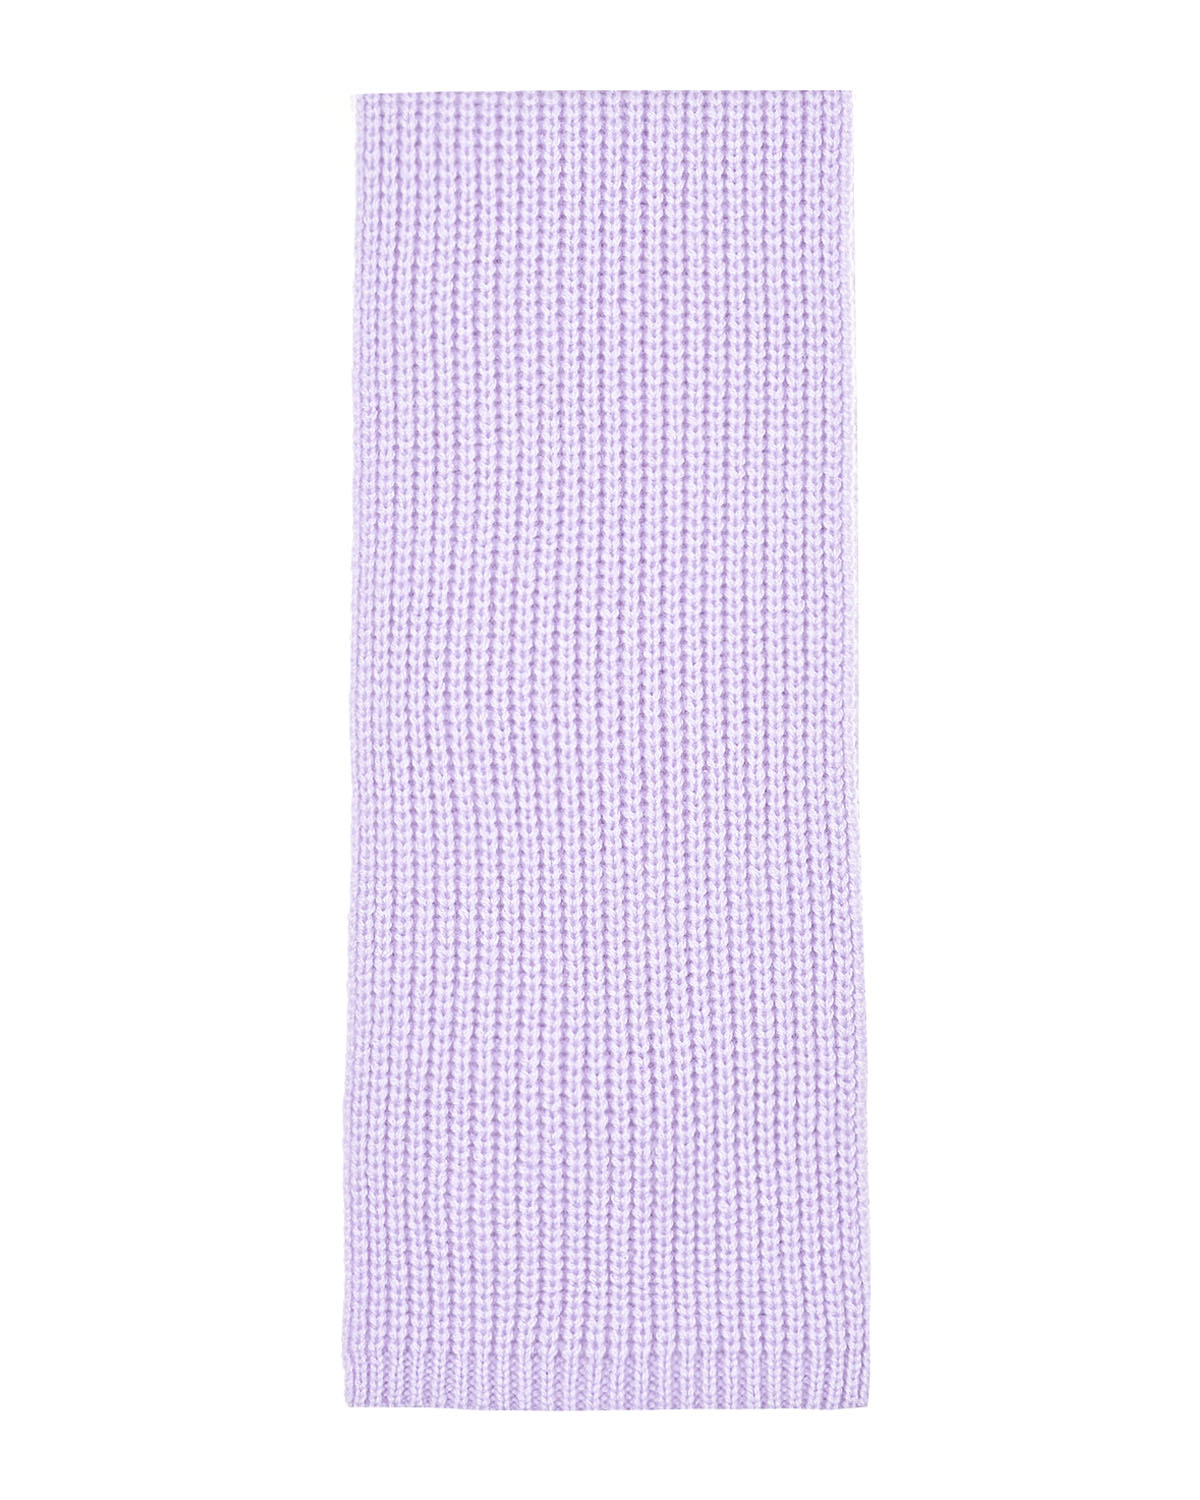 Кашемировый шарф лилового цвета, 162x15 см Yves Salomon детский, размер unica - фото 2